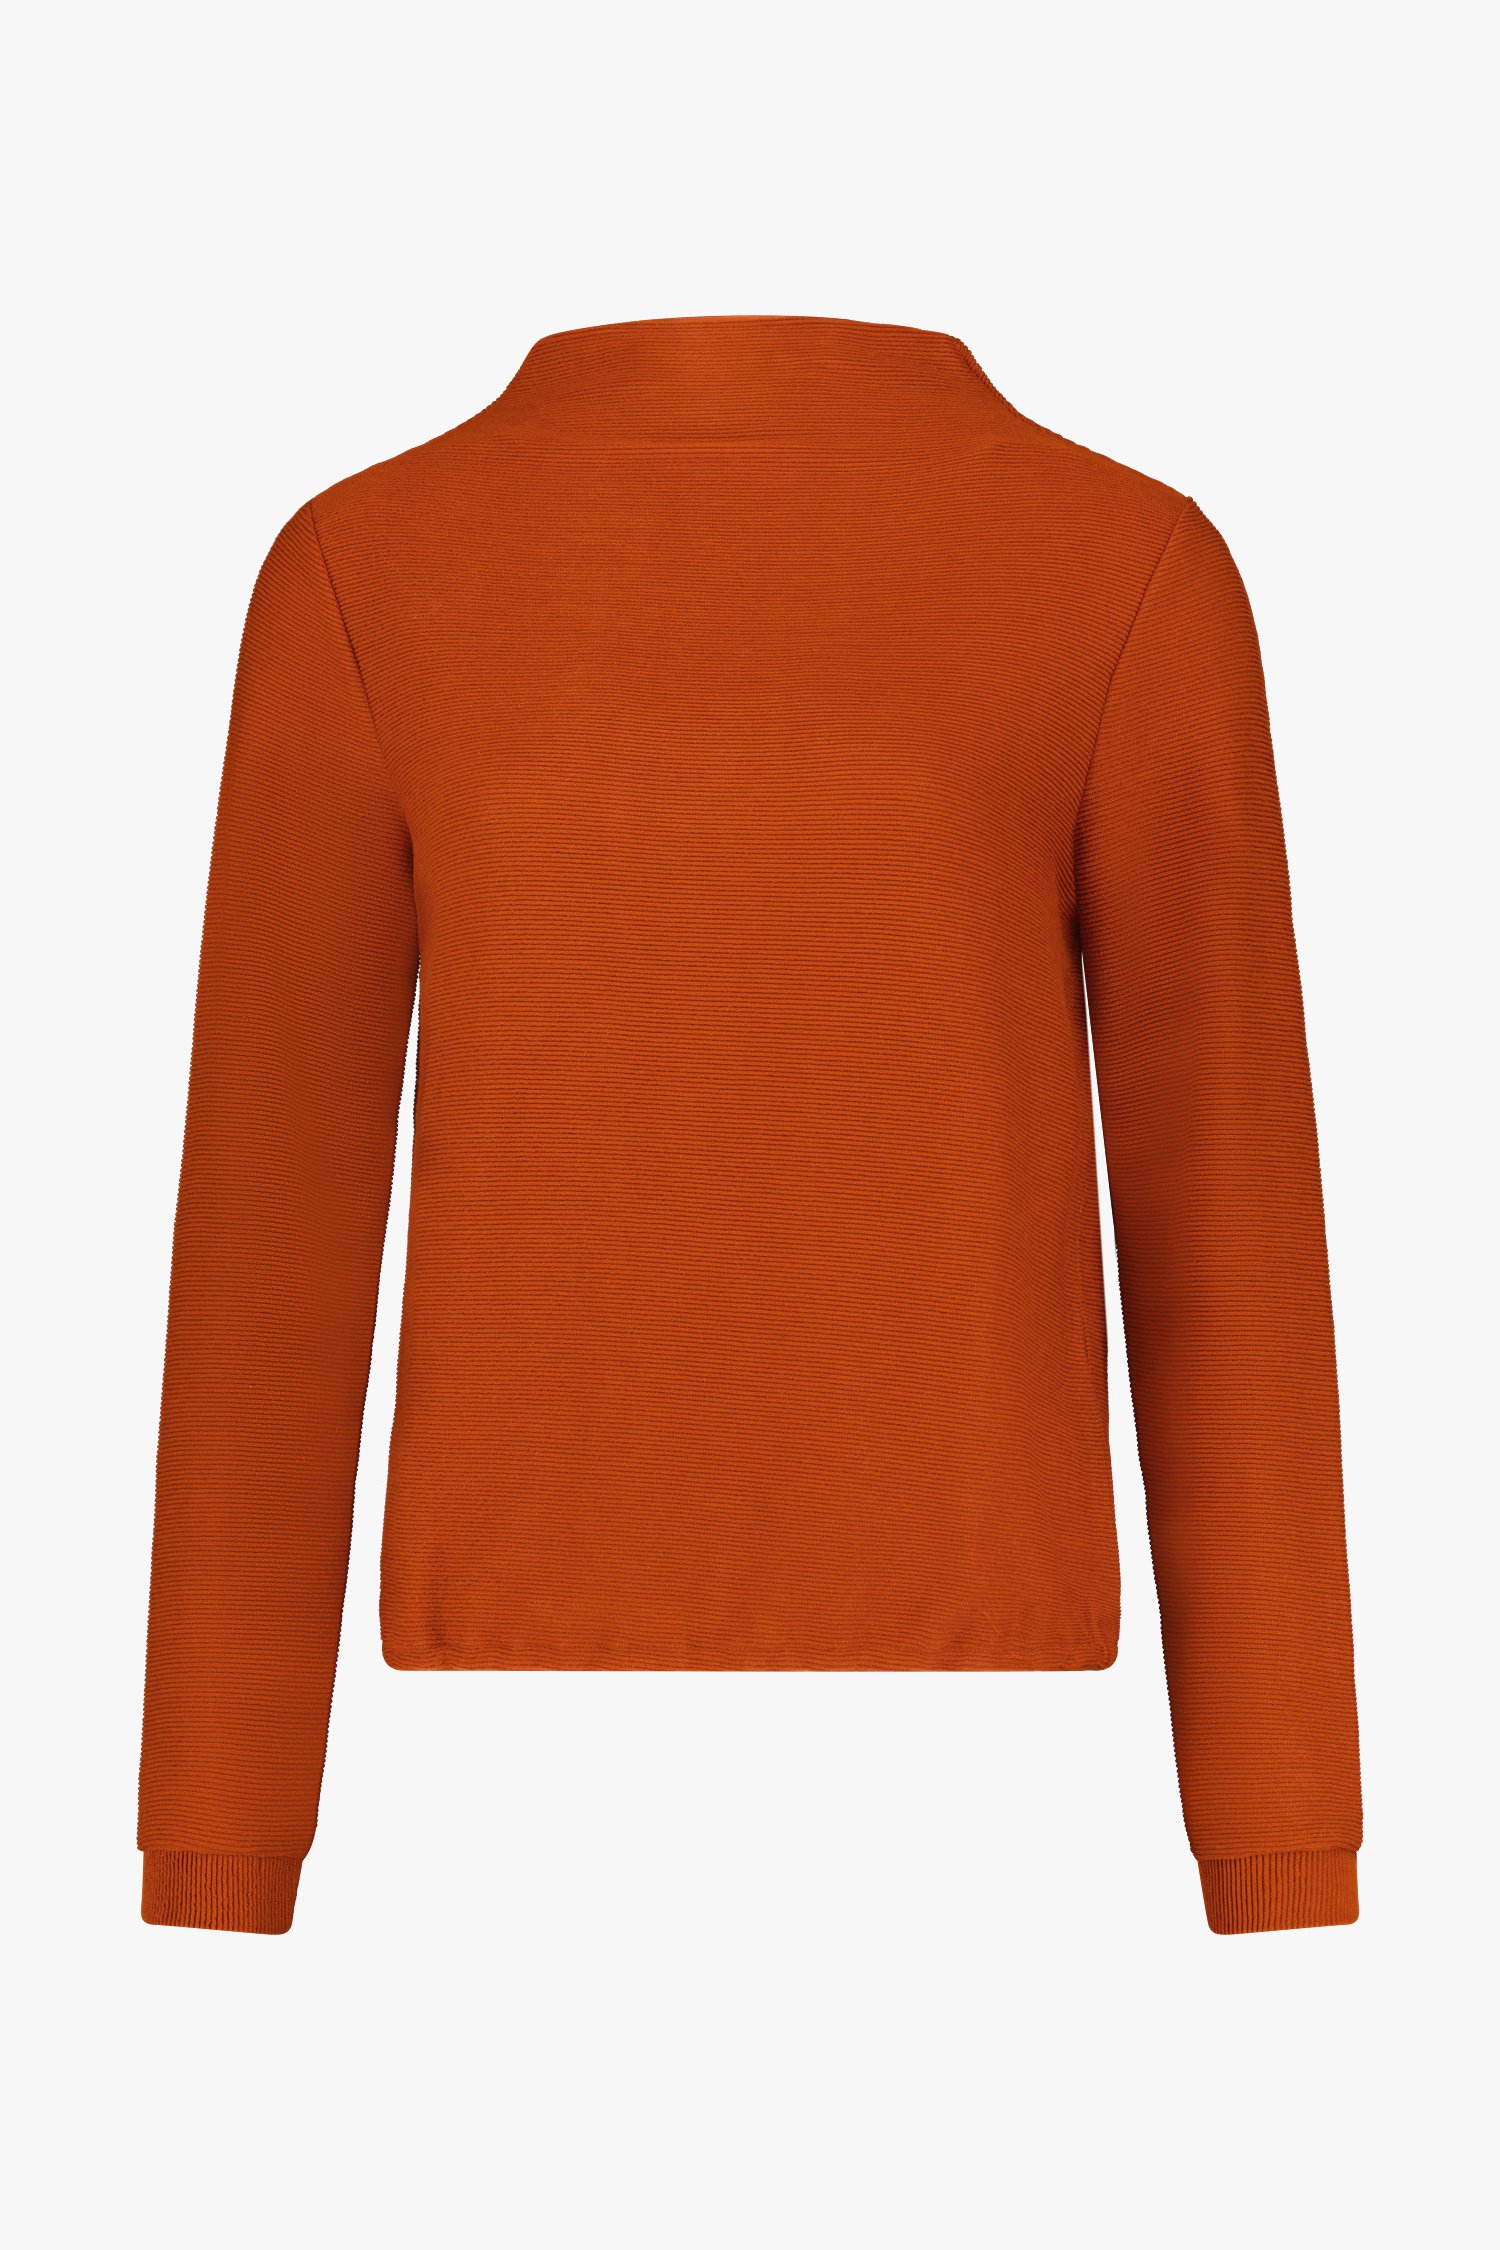 T-shirt orange marron en tissu côtelé  de Libelle pour Femmes